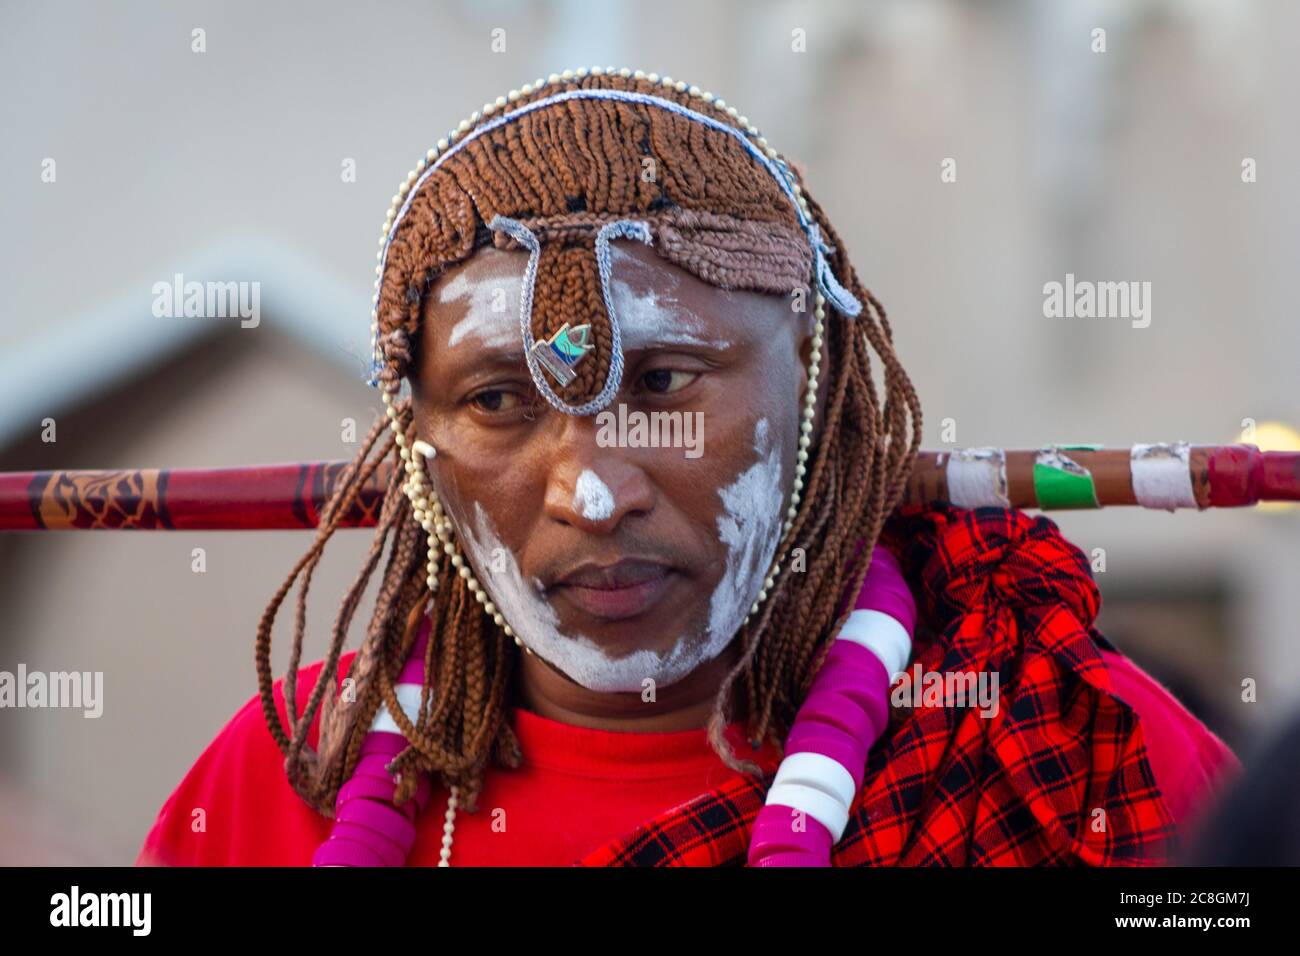 Ritratto di uomo africano che indossa costume tradizionale tribù con sfondo sfocato girato durante il festival africano nel villaggio culturale di Katara Doha Foto Stock